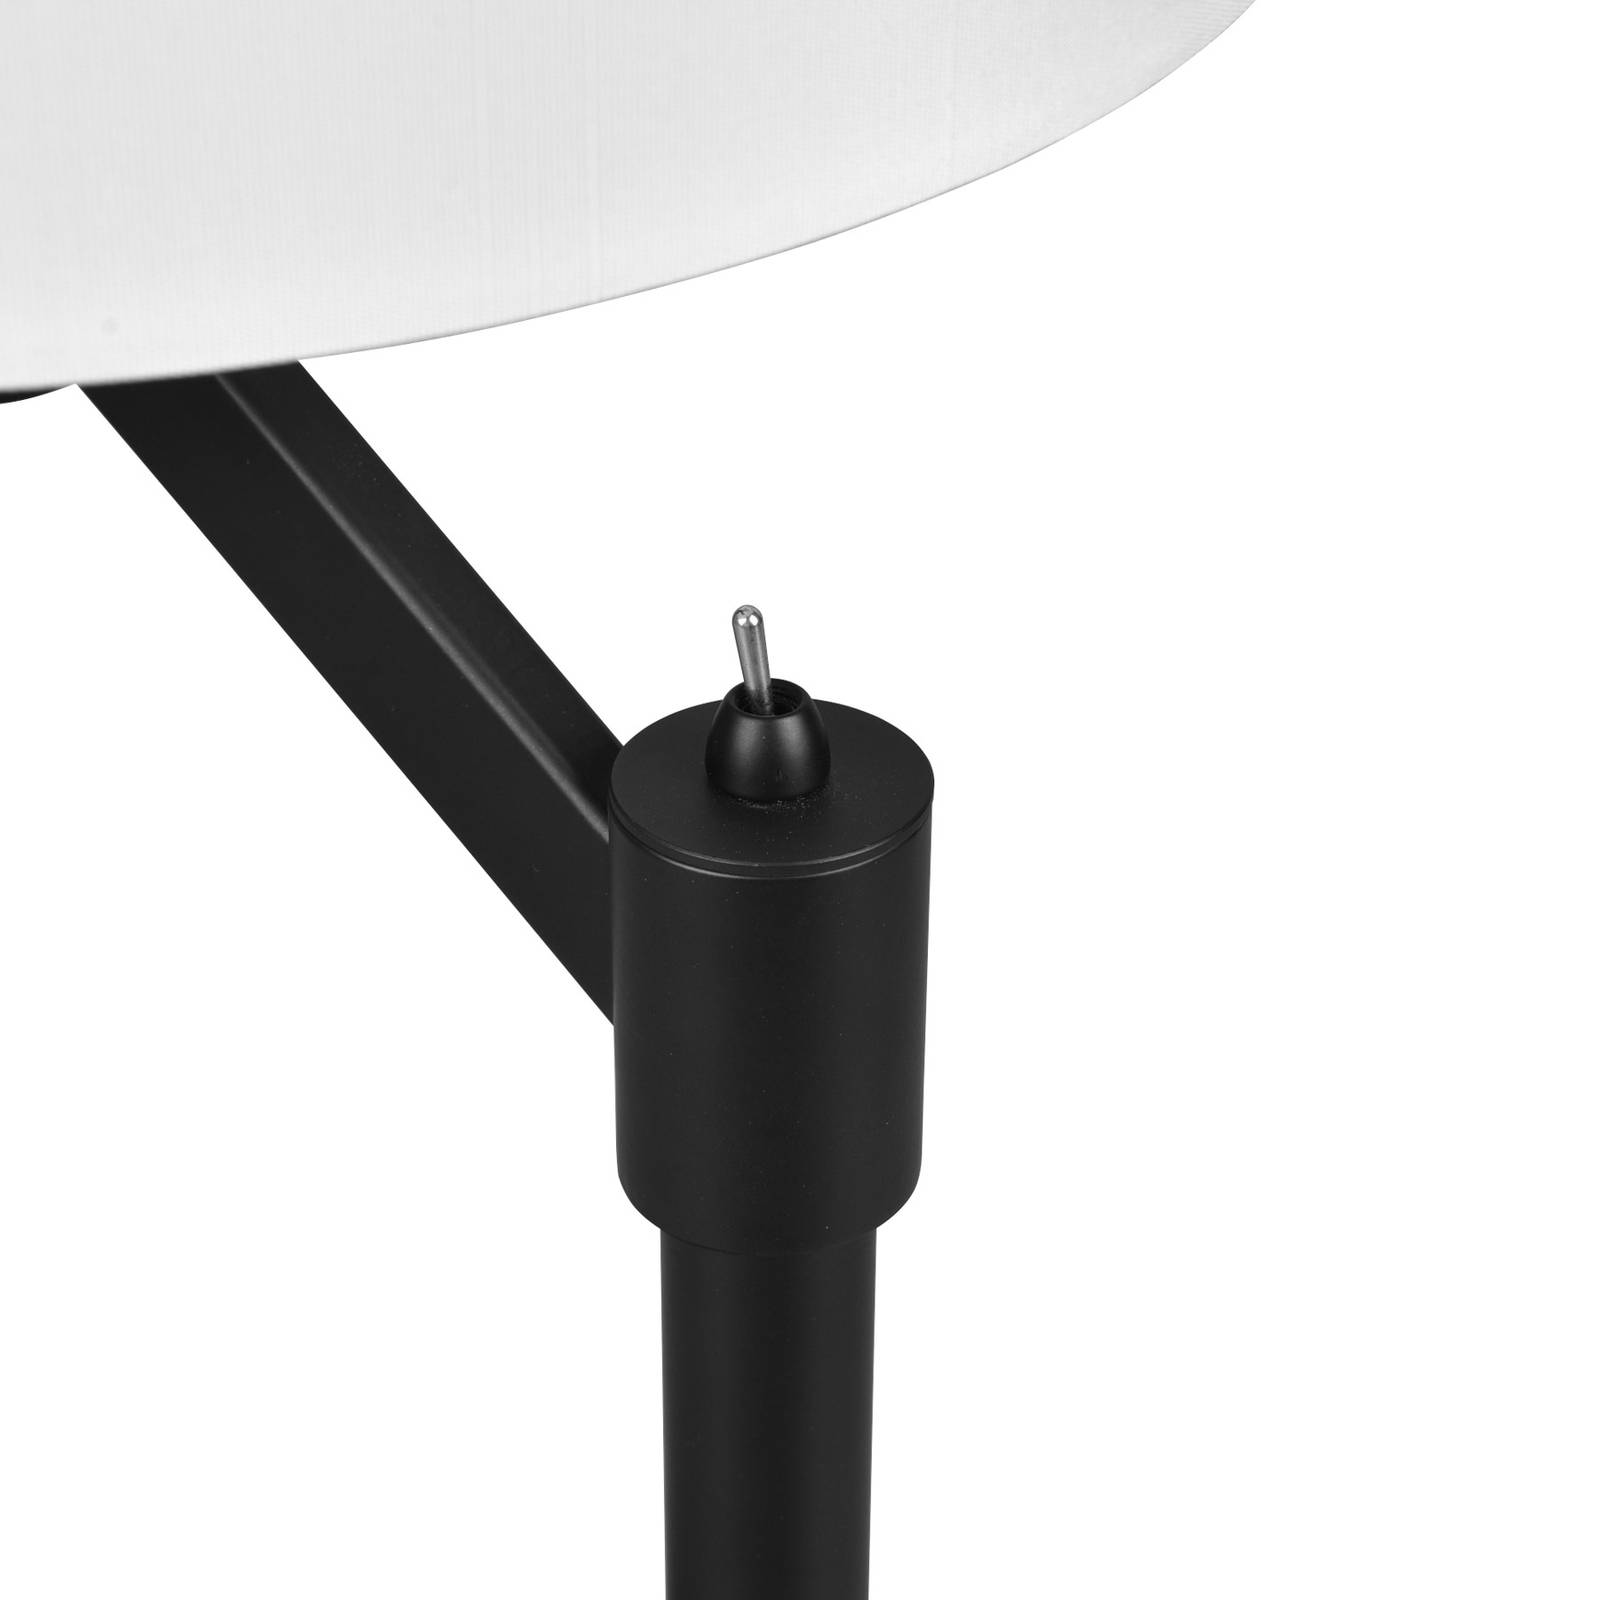 Trio lighting cassio asztali lámpa szövet ernyővel, fekete színben